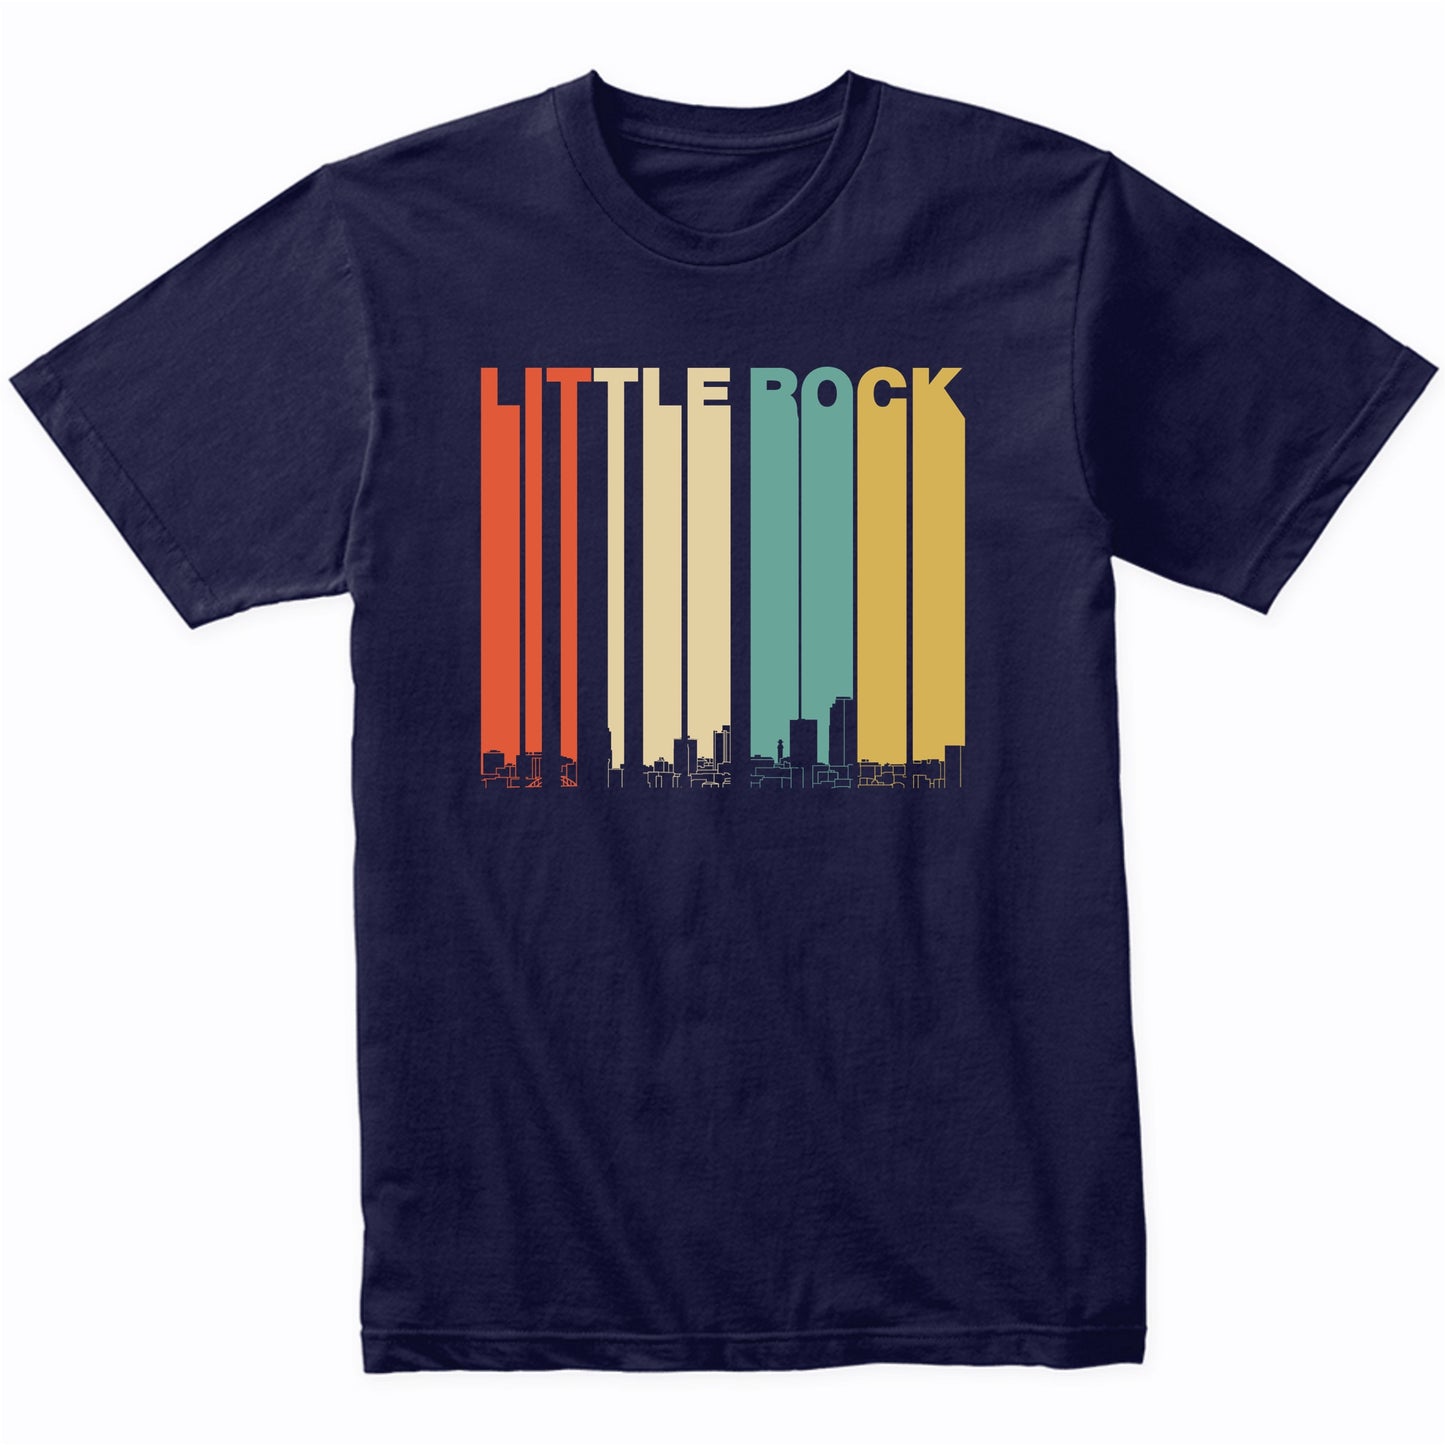 Vintage 1970's Style Little Rock Arkansas Skyline T-Shirt